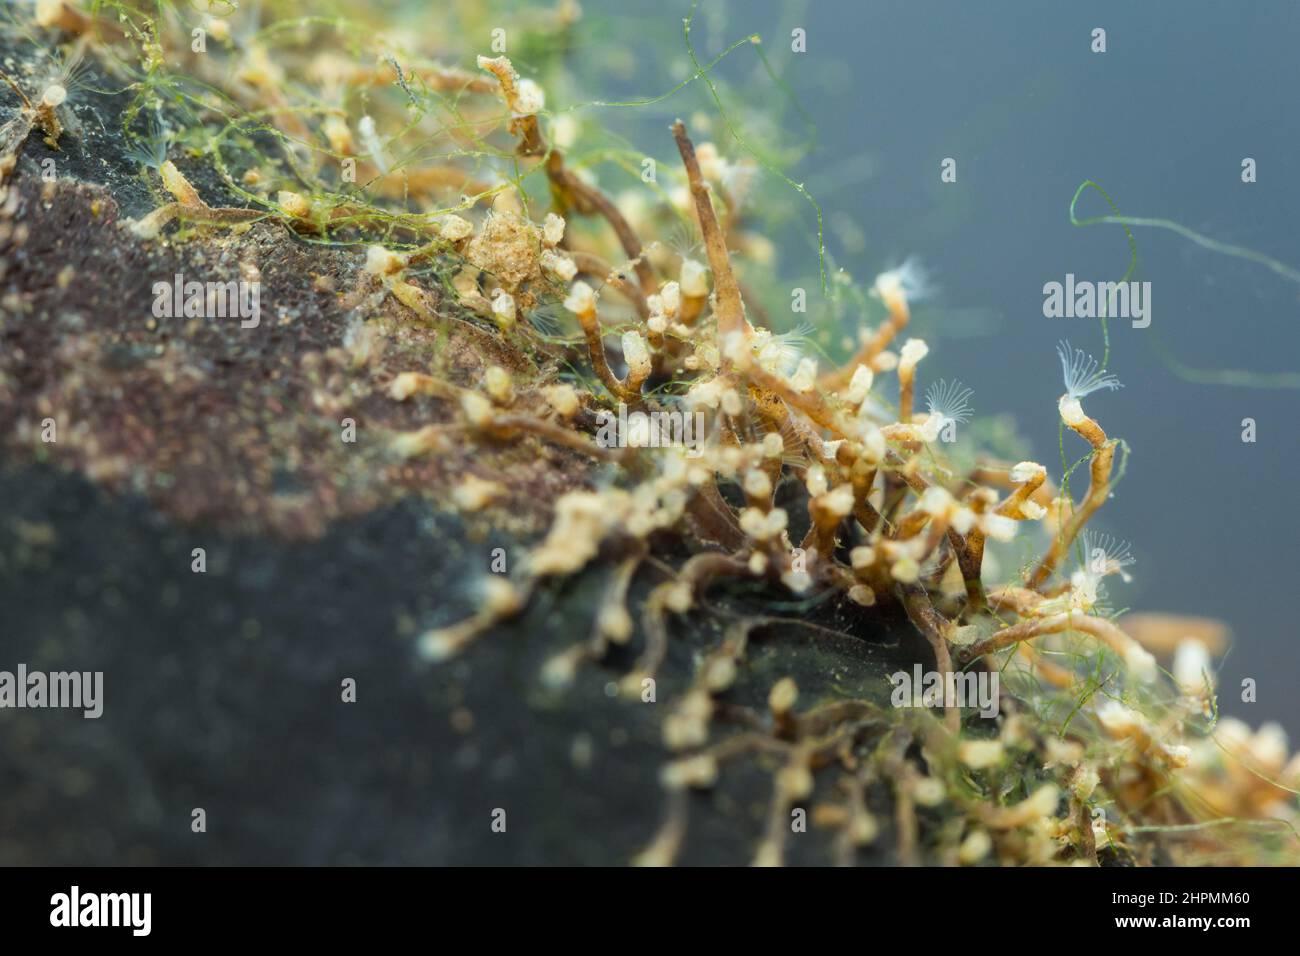 freshwater-moss-animal-plumatella-fruticosa-2HPMM60.jpg